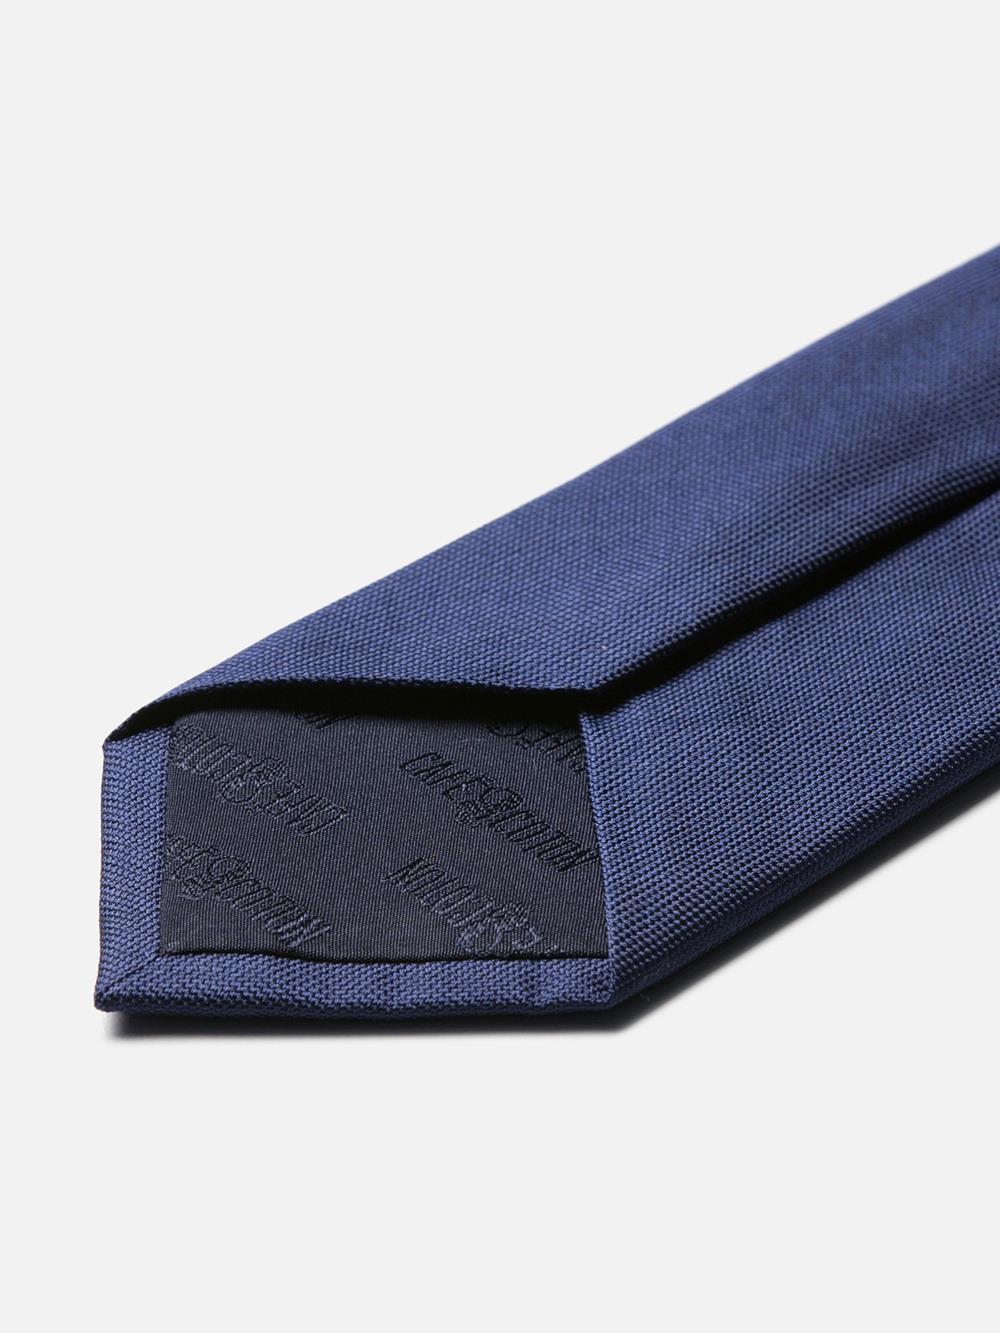 Cravate en soie bleue